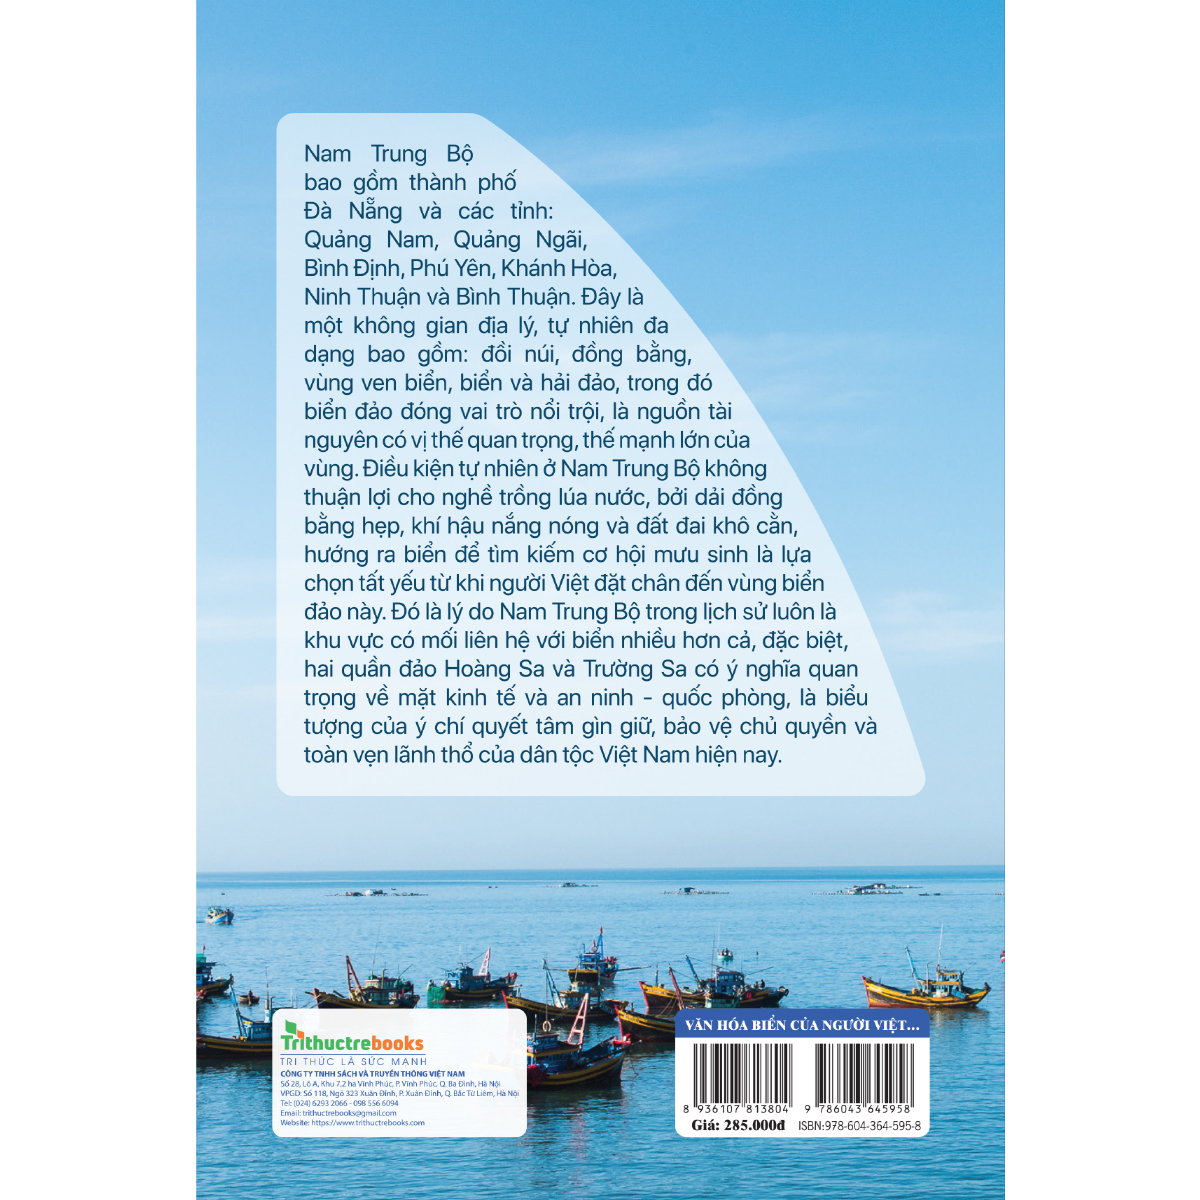 Văn Hóa Biển Của Người Việt Vùng Nam Trung Bộ Việt Nam - Bìa Cứng PDF